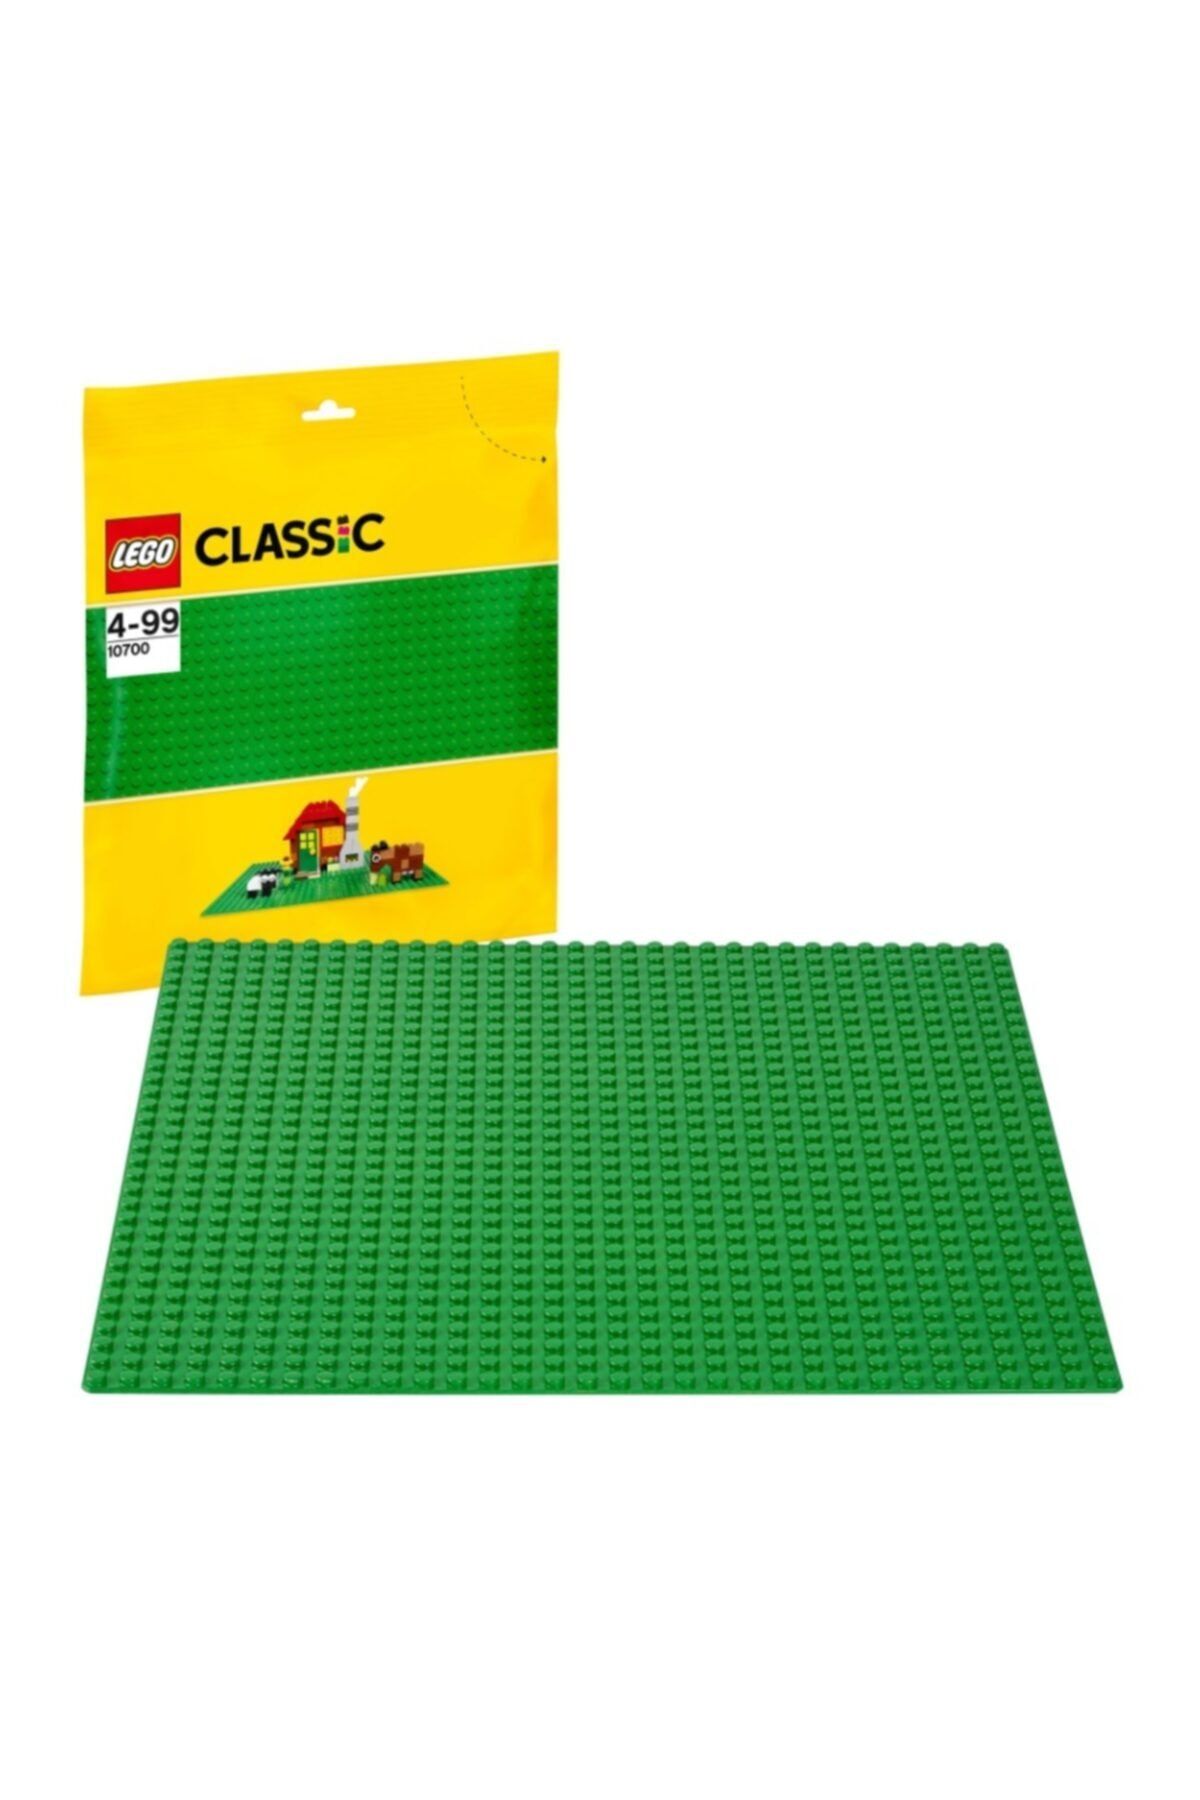 LEGO Classic Yeşil Zemin 10700 | 4+ Yaş Için Tasarım Alanı 25,5 X 25,5 cm (1 Parça)